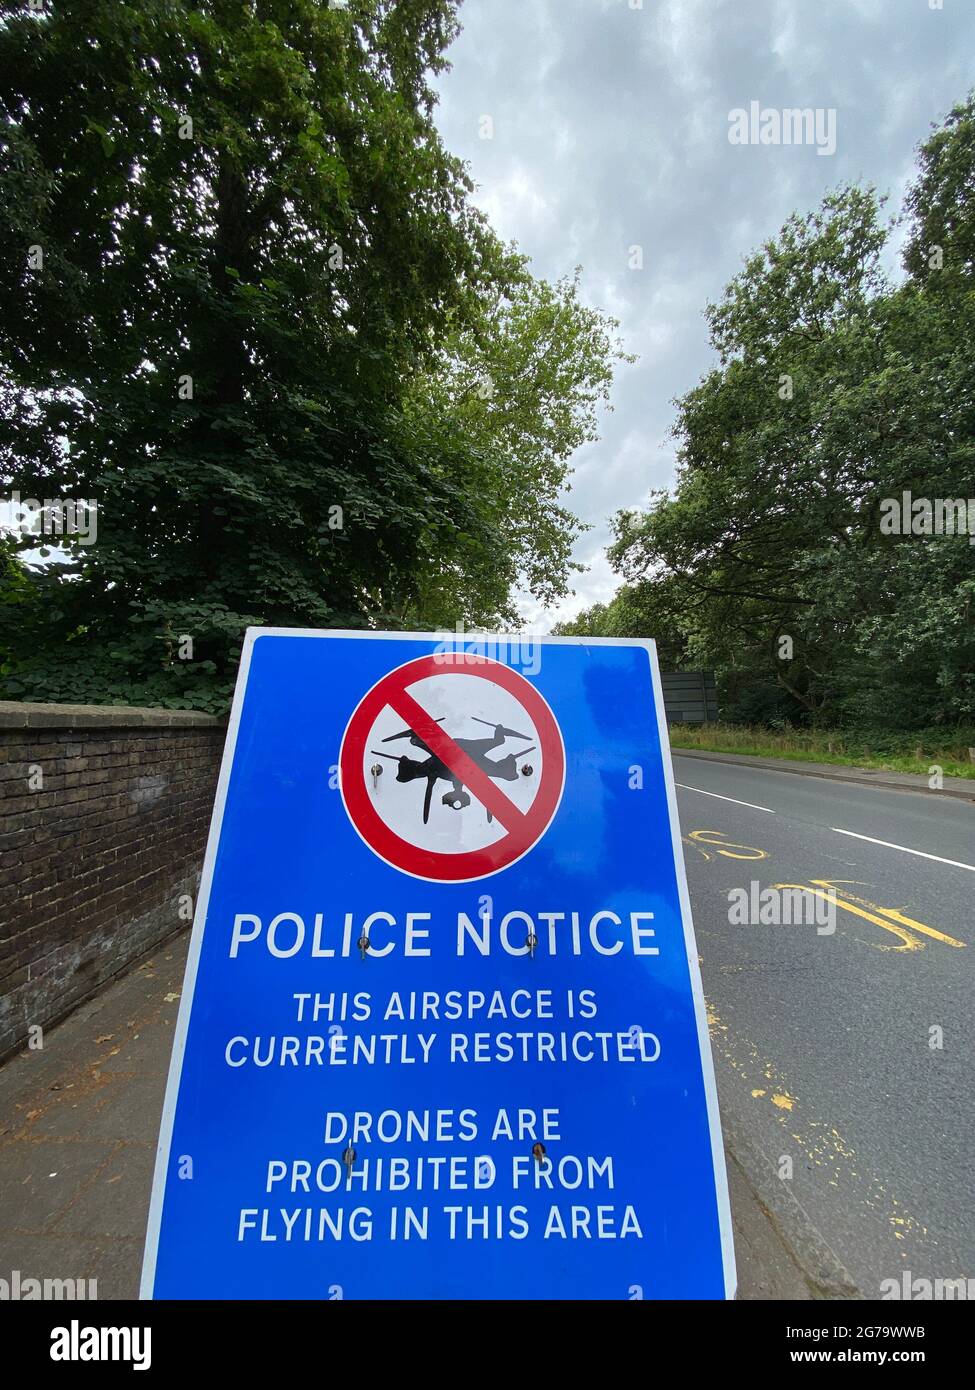 Un panneau de police près de Wimbledon, dans le sud-ouest de Londres, avertit les pilotes de drones que l'espace aérien est restreint et que l'envoi de drones est interdit. Date de la photo: Dimanche 11 juillet 2021. Banque D'Images